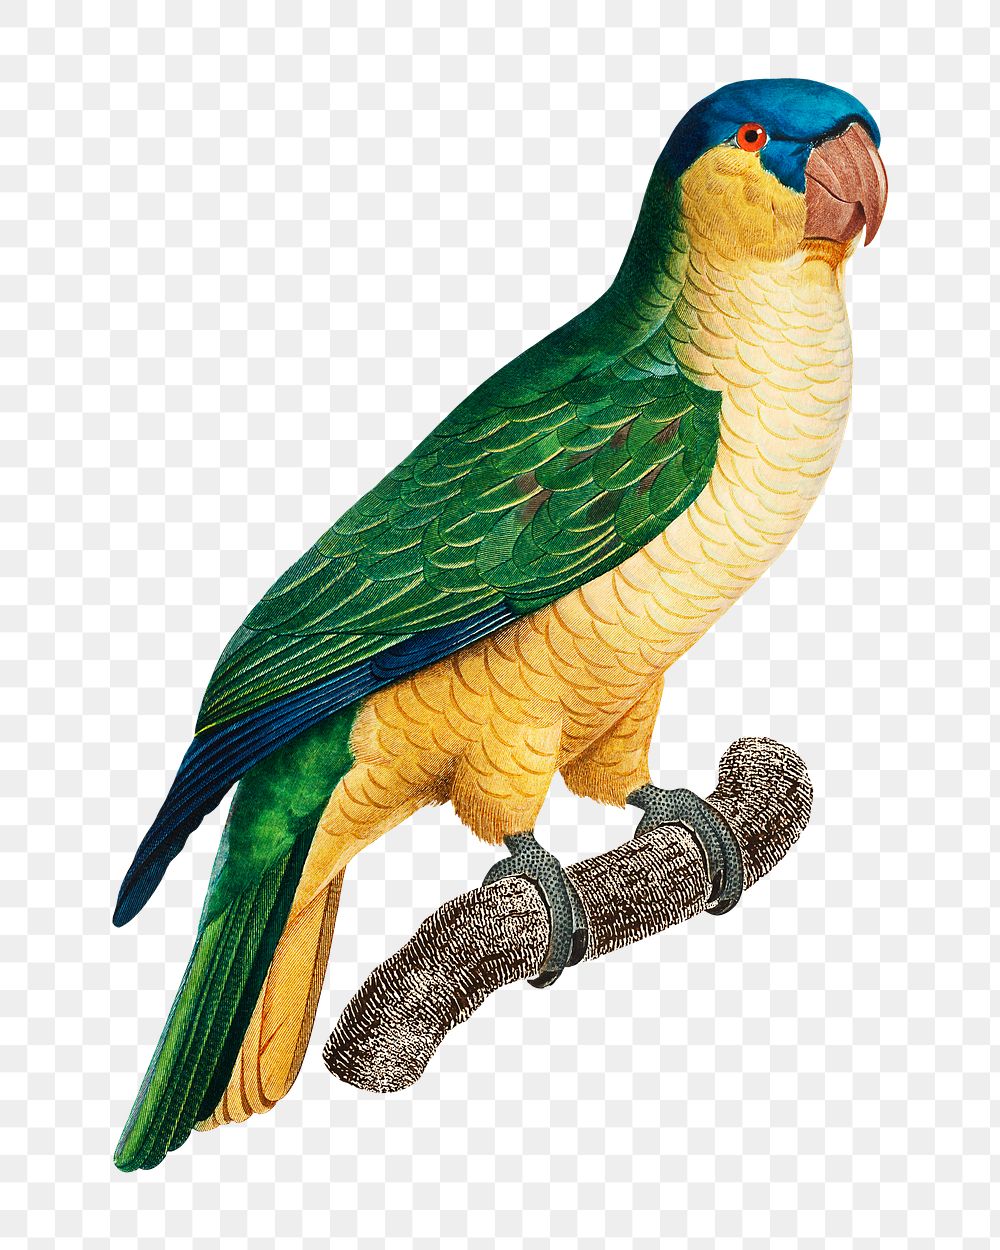 Black-lored parrot png bird sticker, vintage animal illustration, transparent background